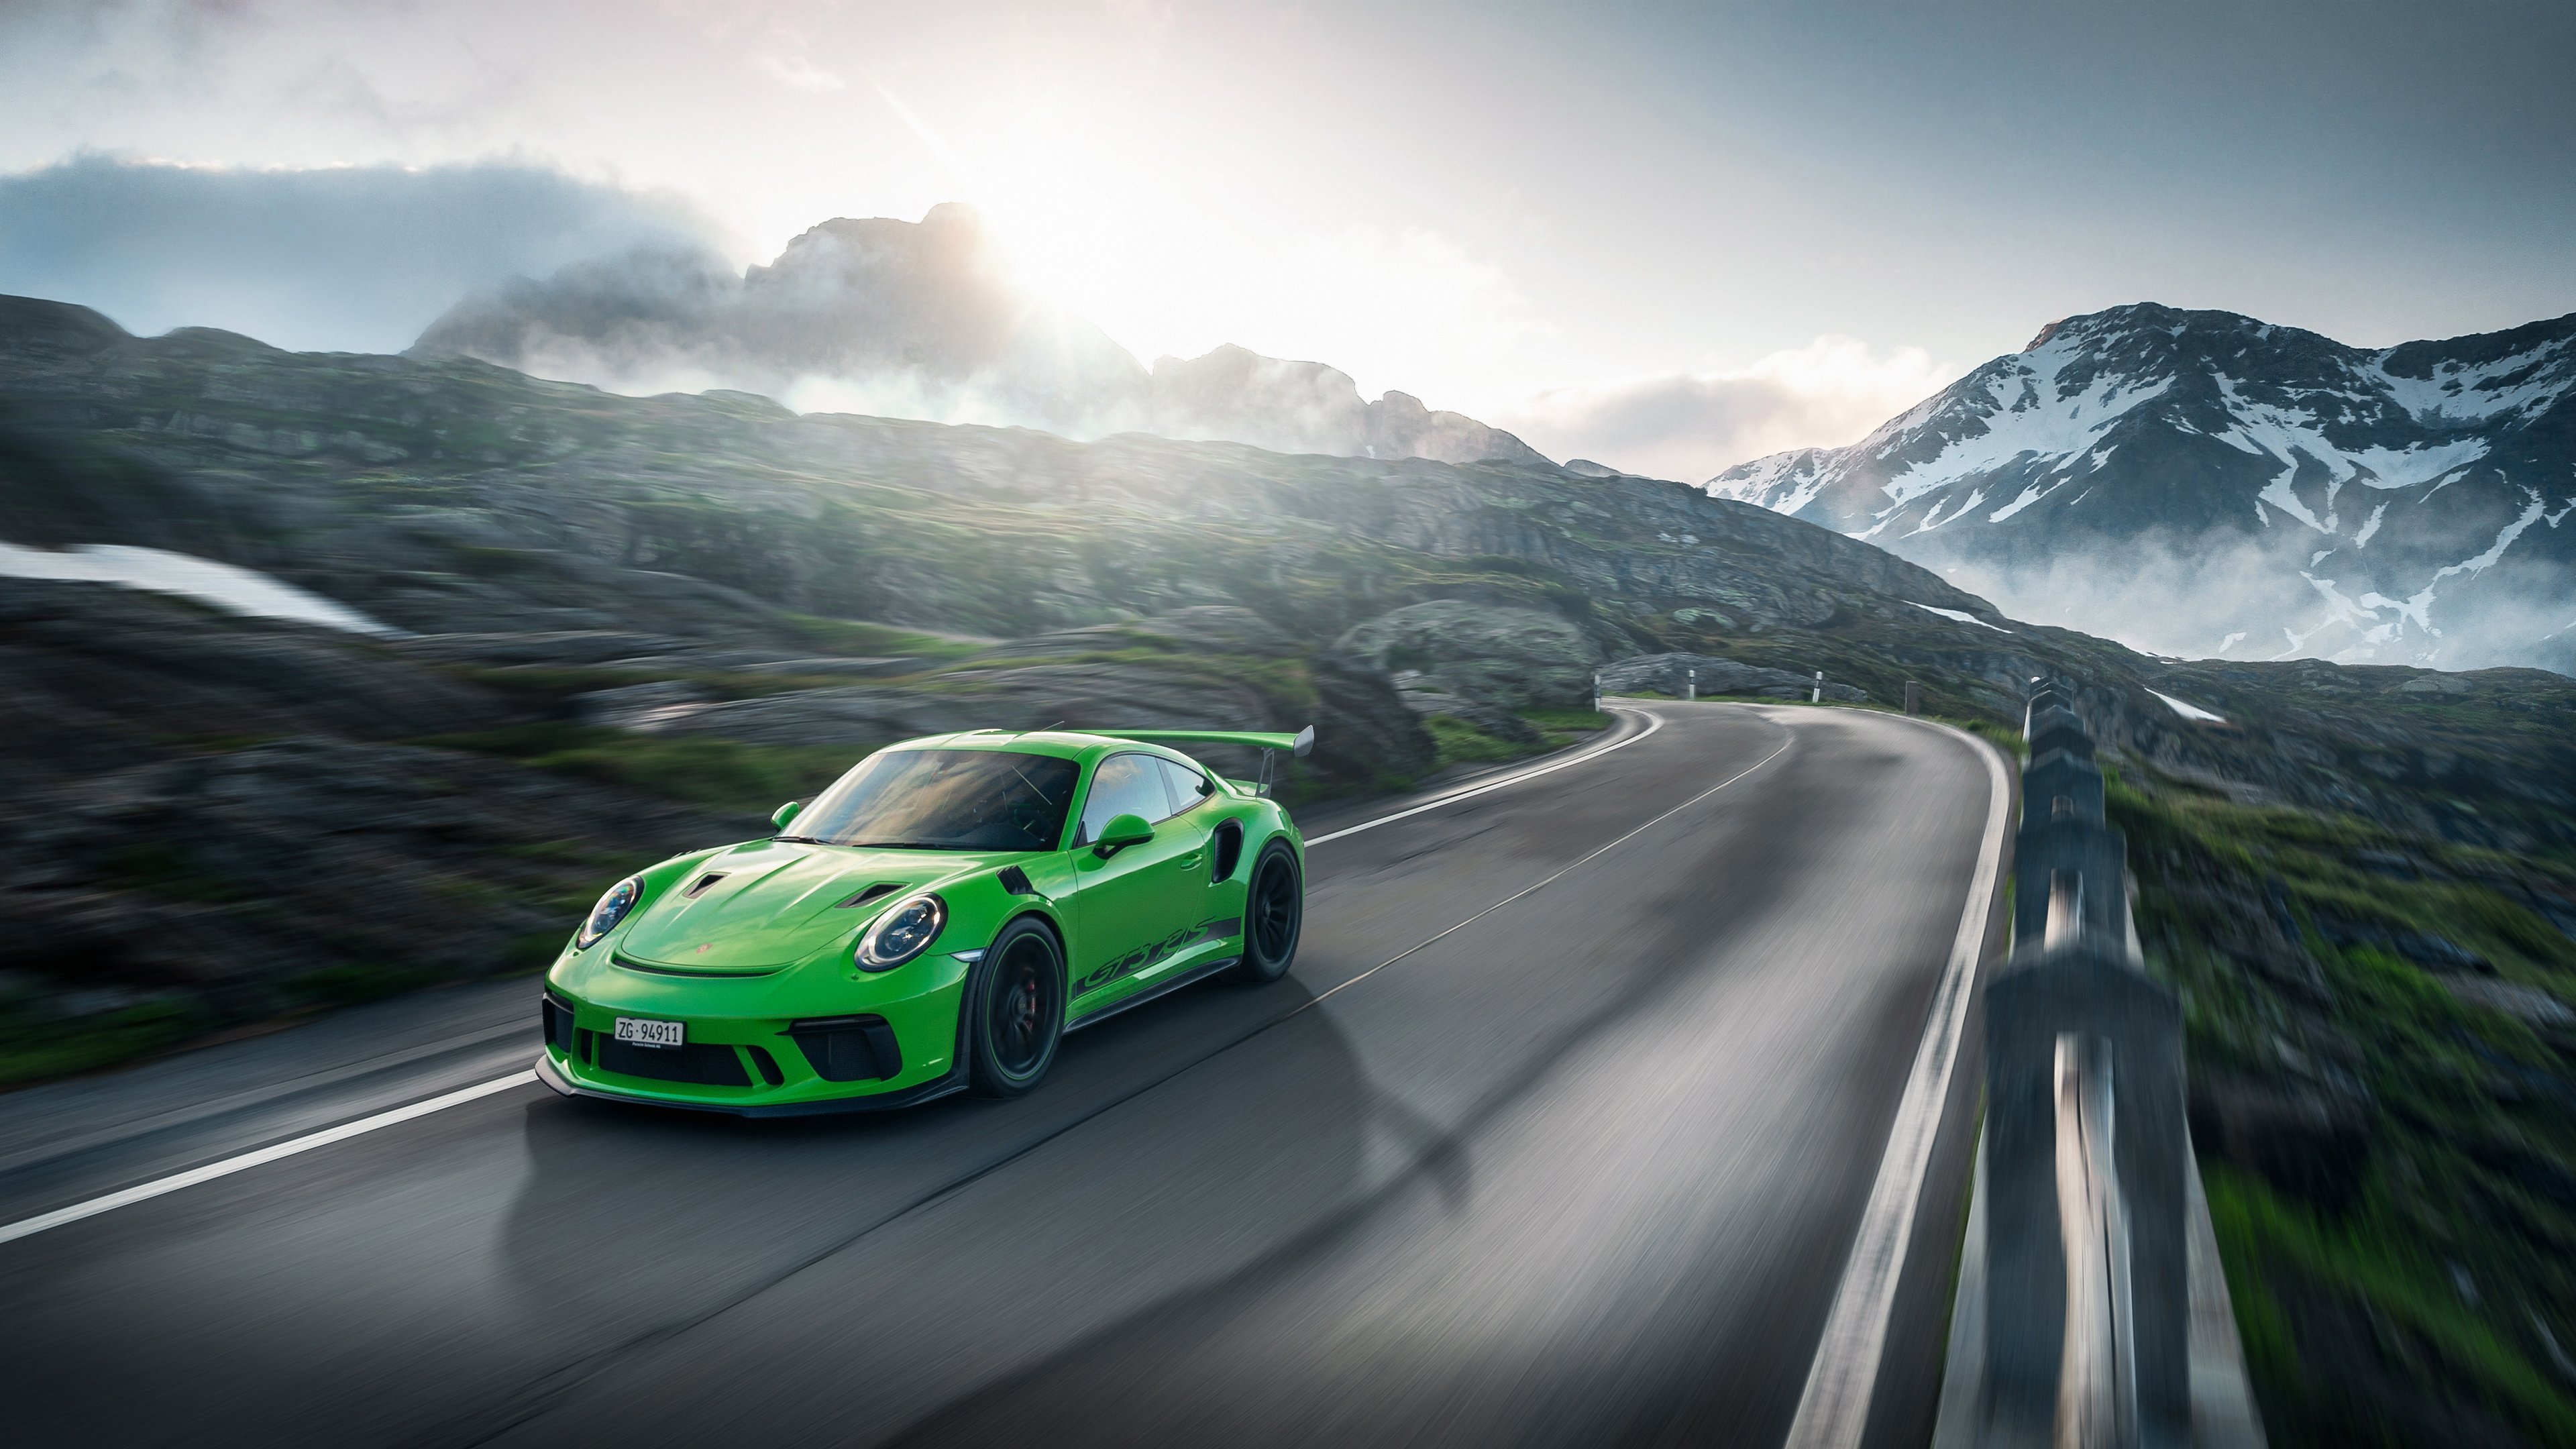 Fondos de pantalla Porsche GT3RS